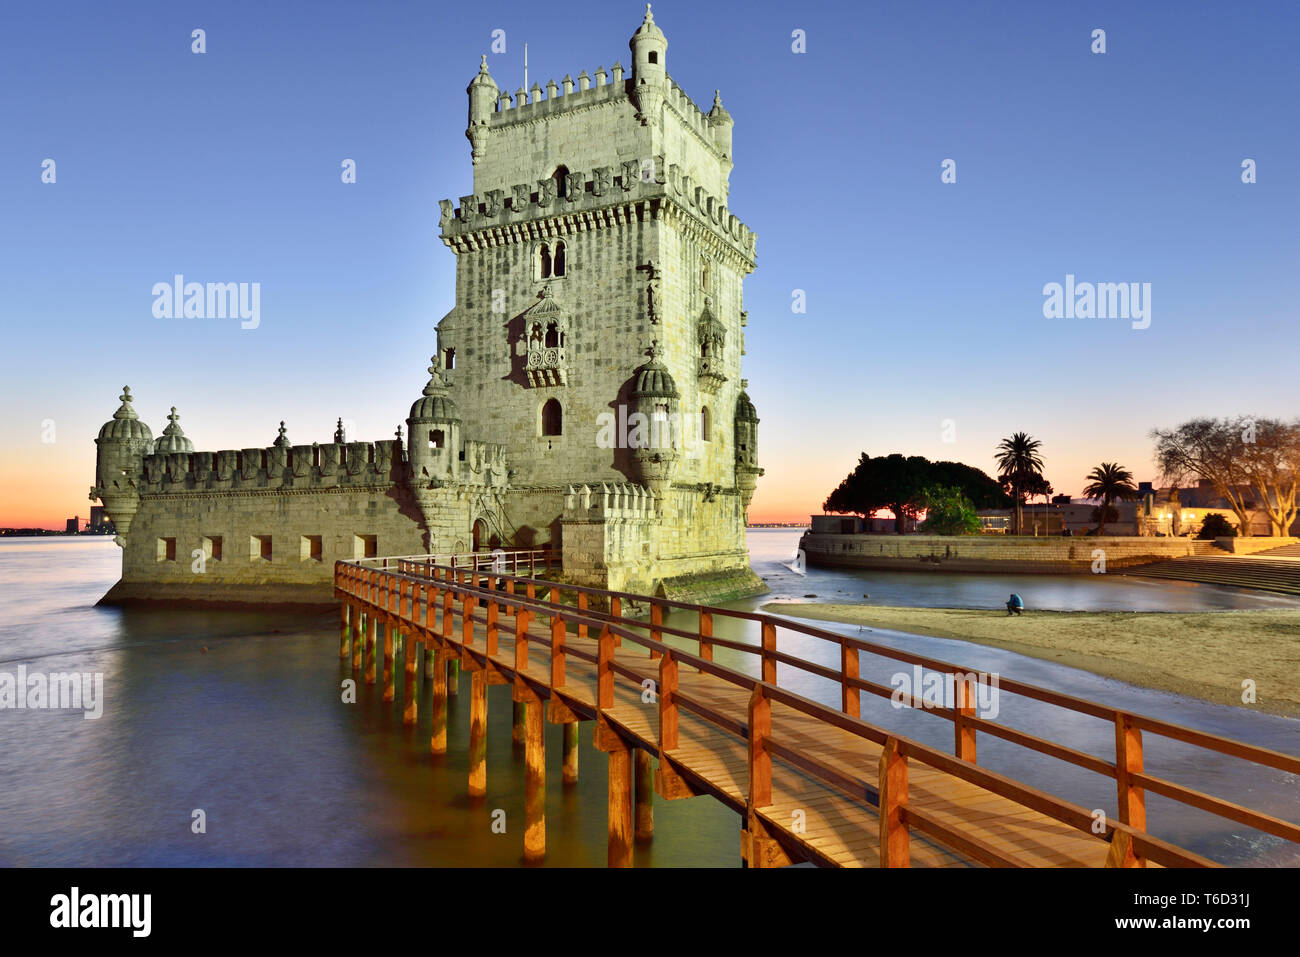 Torre de Belem (Belem Turm), in den Fluss Tejo, ein UNESCO-Weltkulturerbe im 16. Jahrhundert in Portugiesisch manuelinischen Stil erbaut in der Dämmerung. Stockfoto